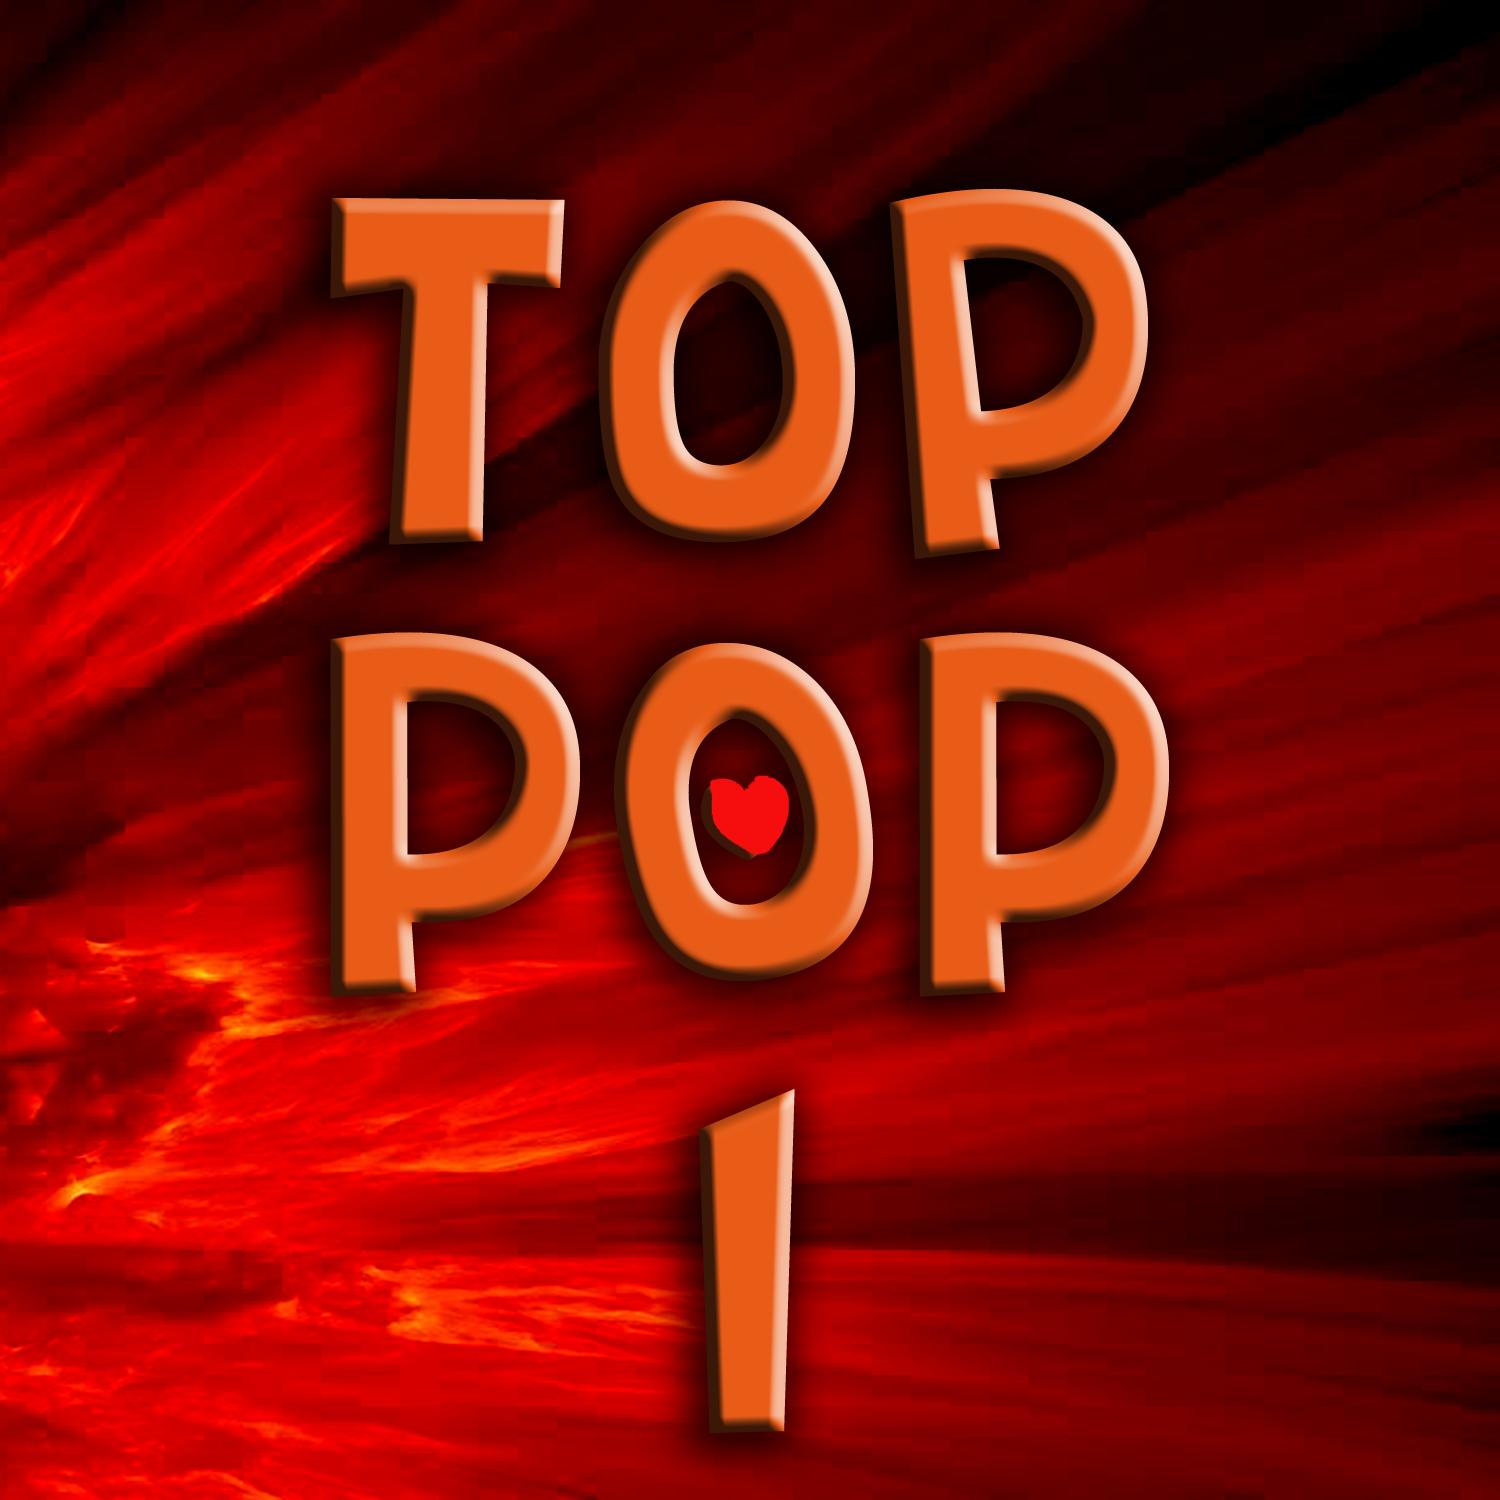 Top Pop 1